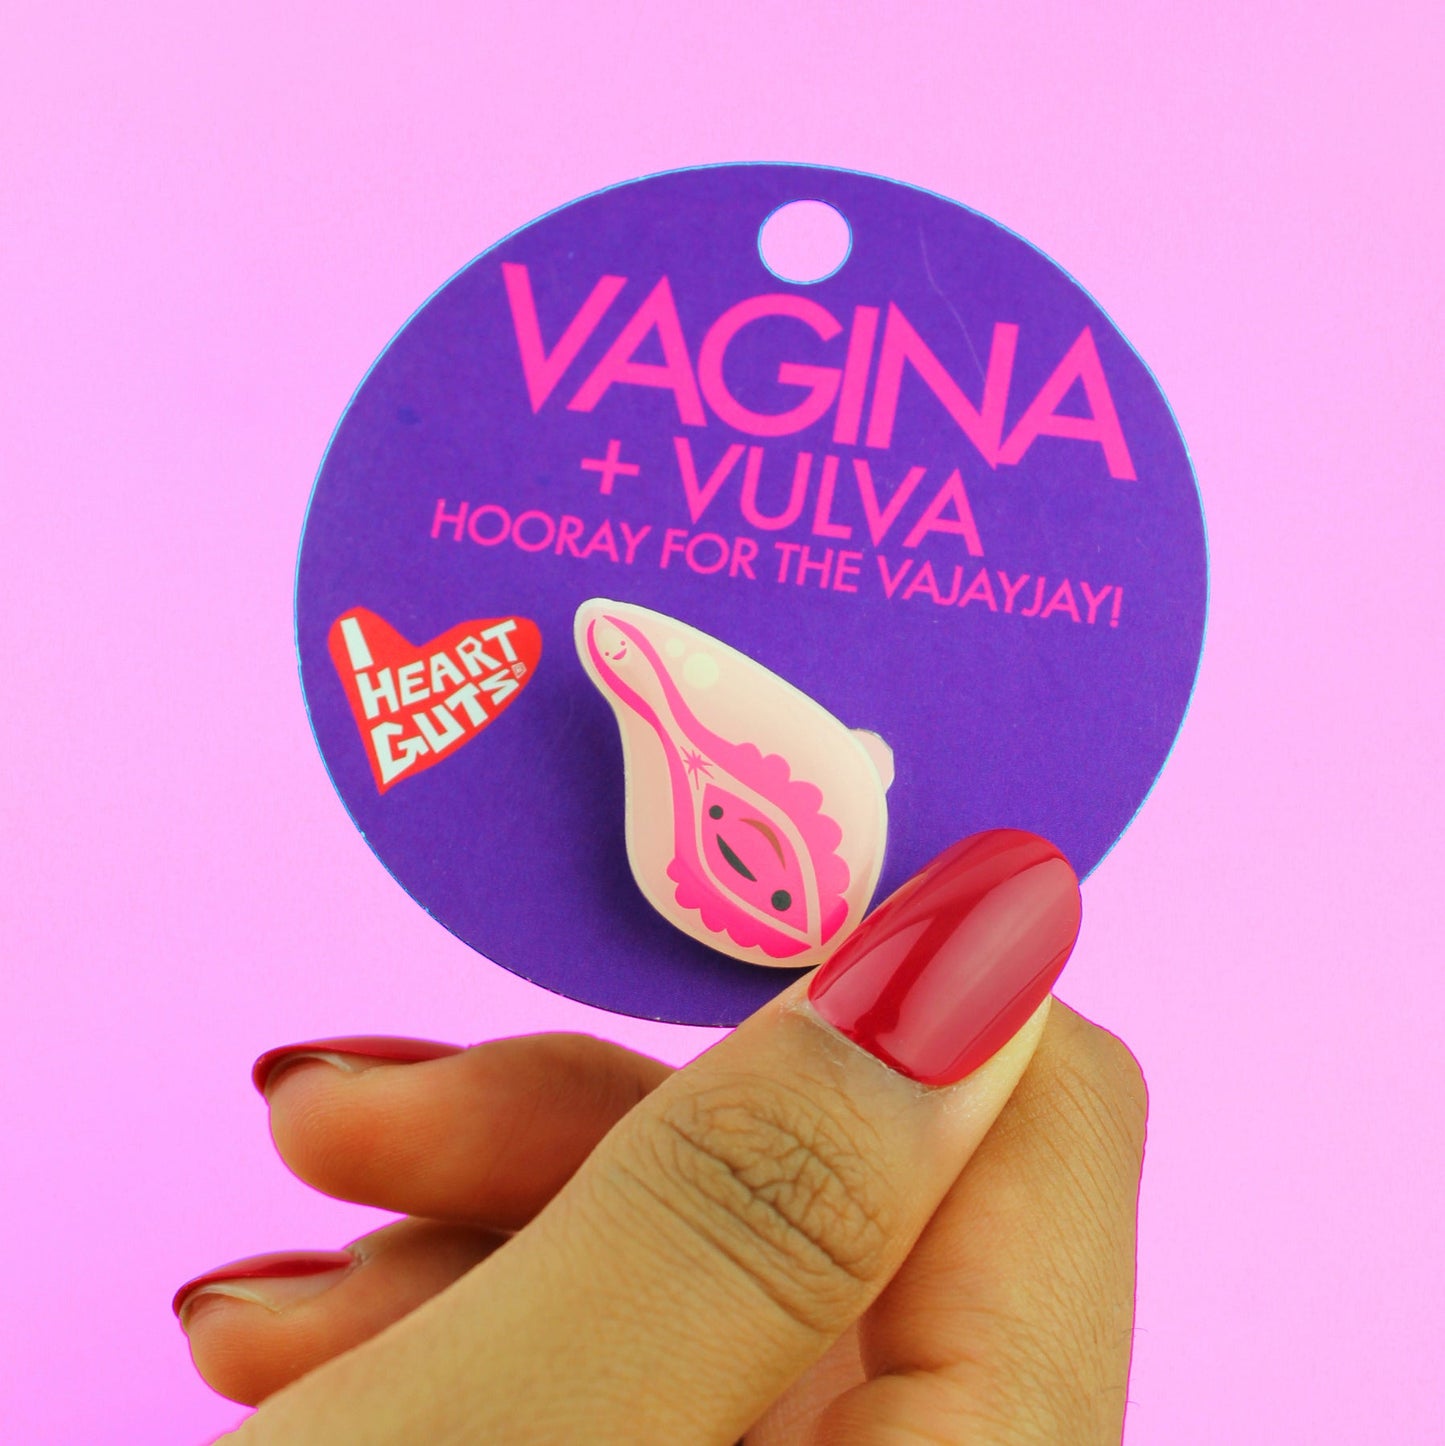 Vagina + Vulva Lapel Pin - Hooray for the Vajayjay!